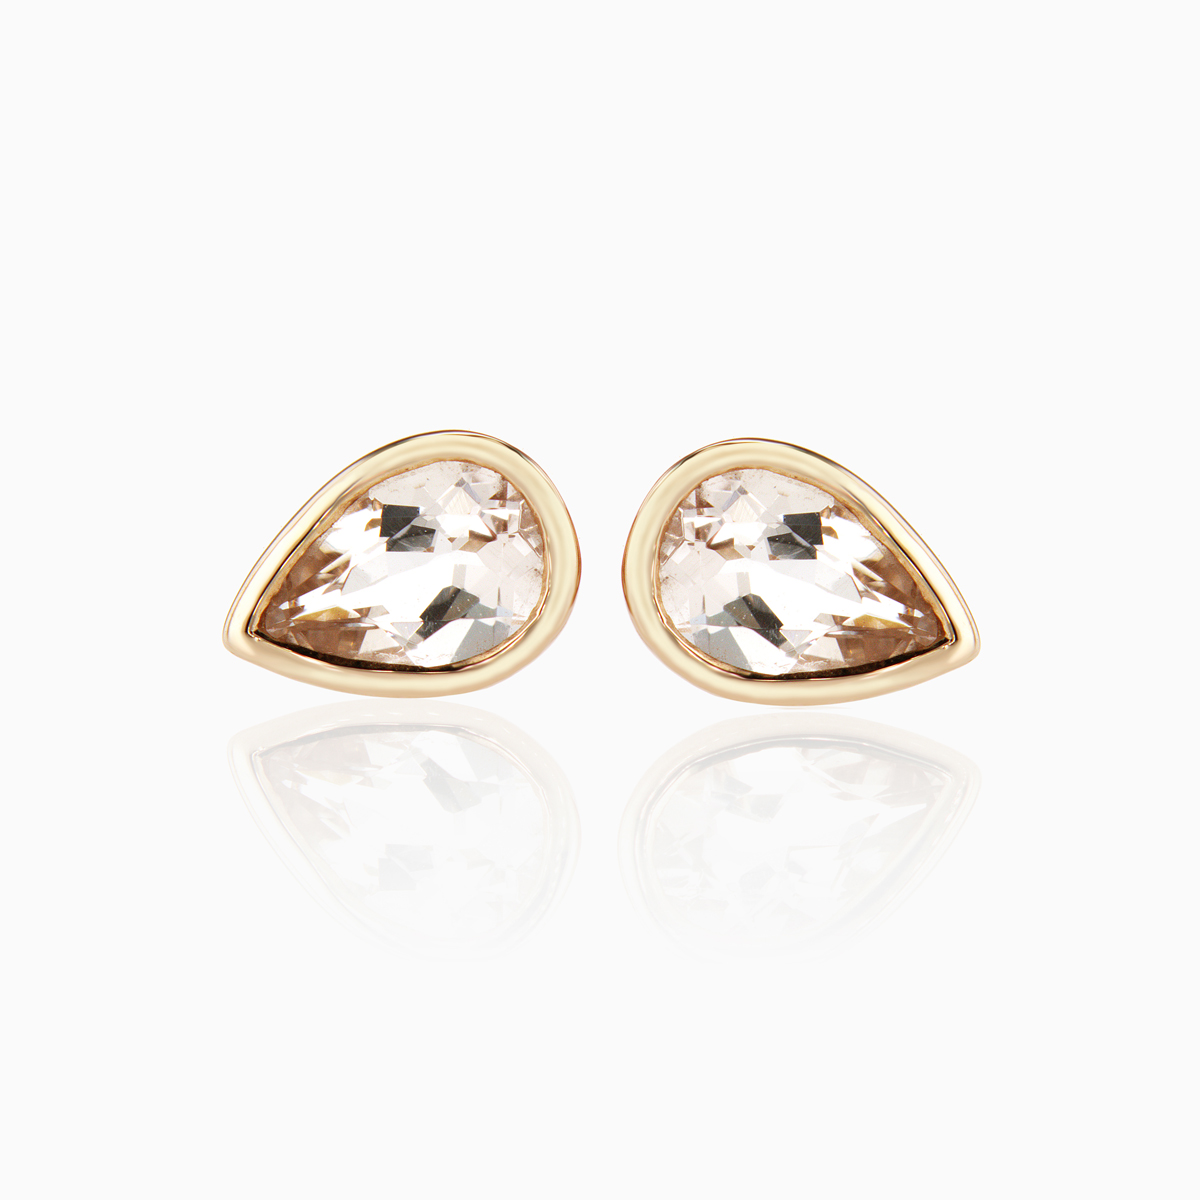 Pear-shaped Natural Morganite Stud Earrings, 14k Rose Gold